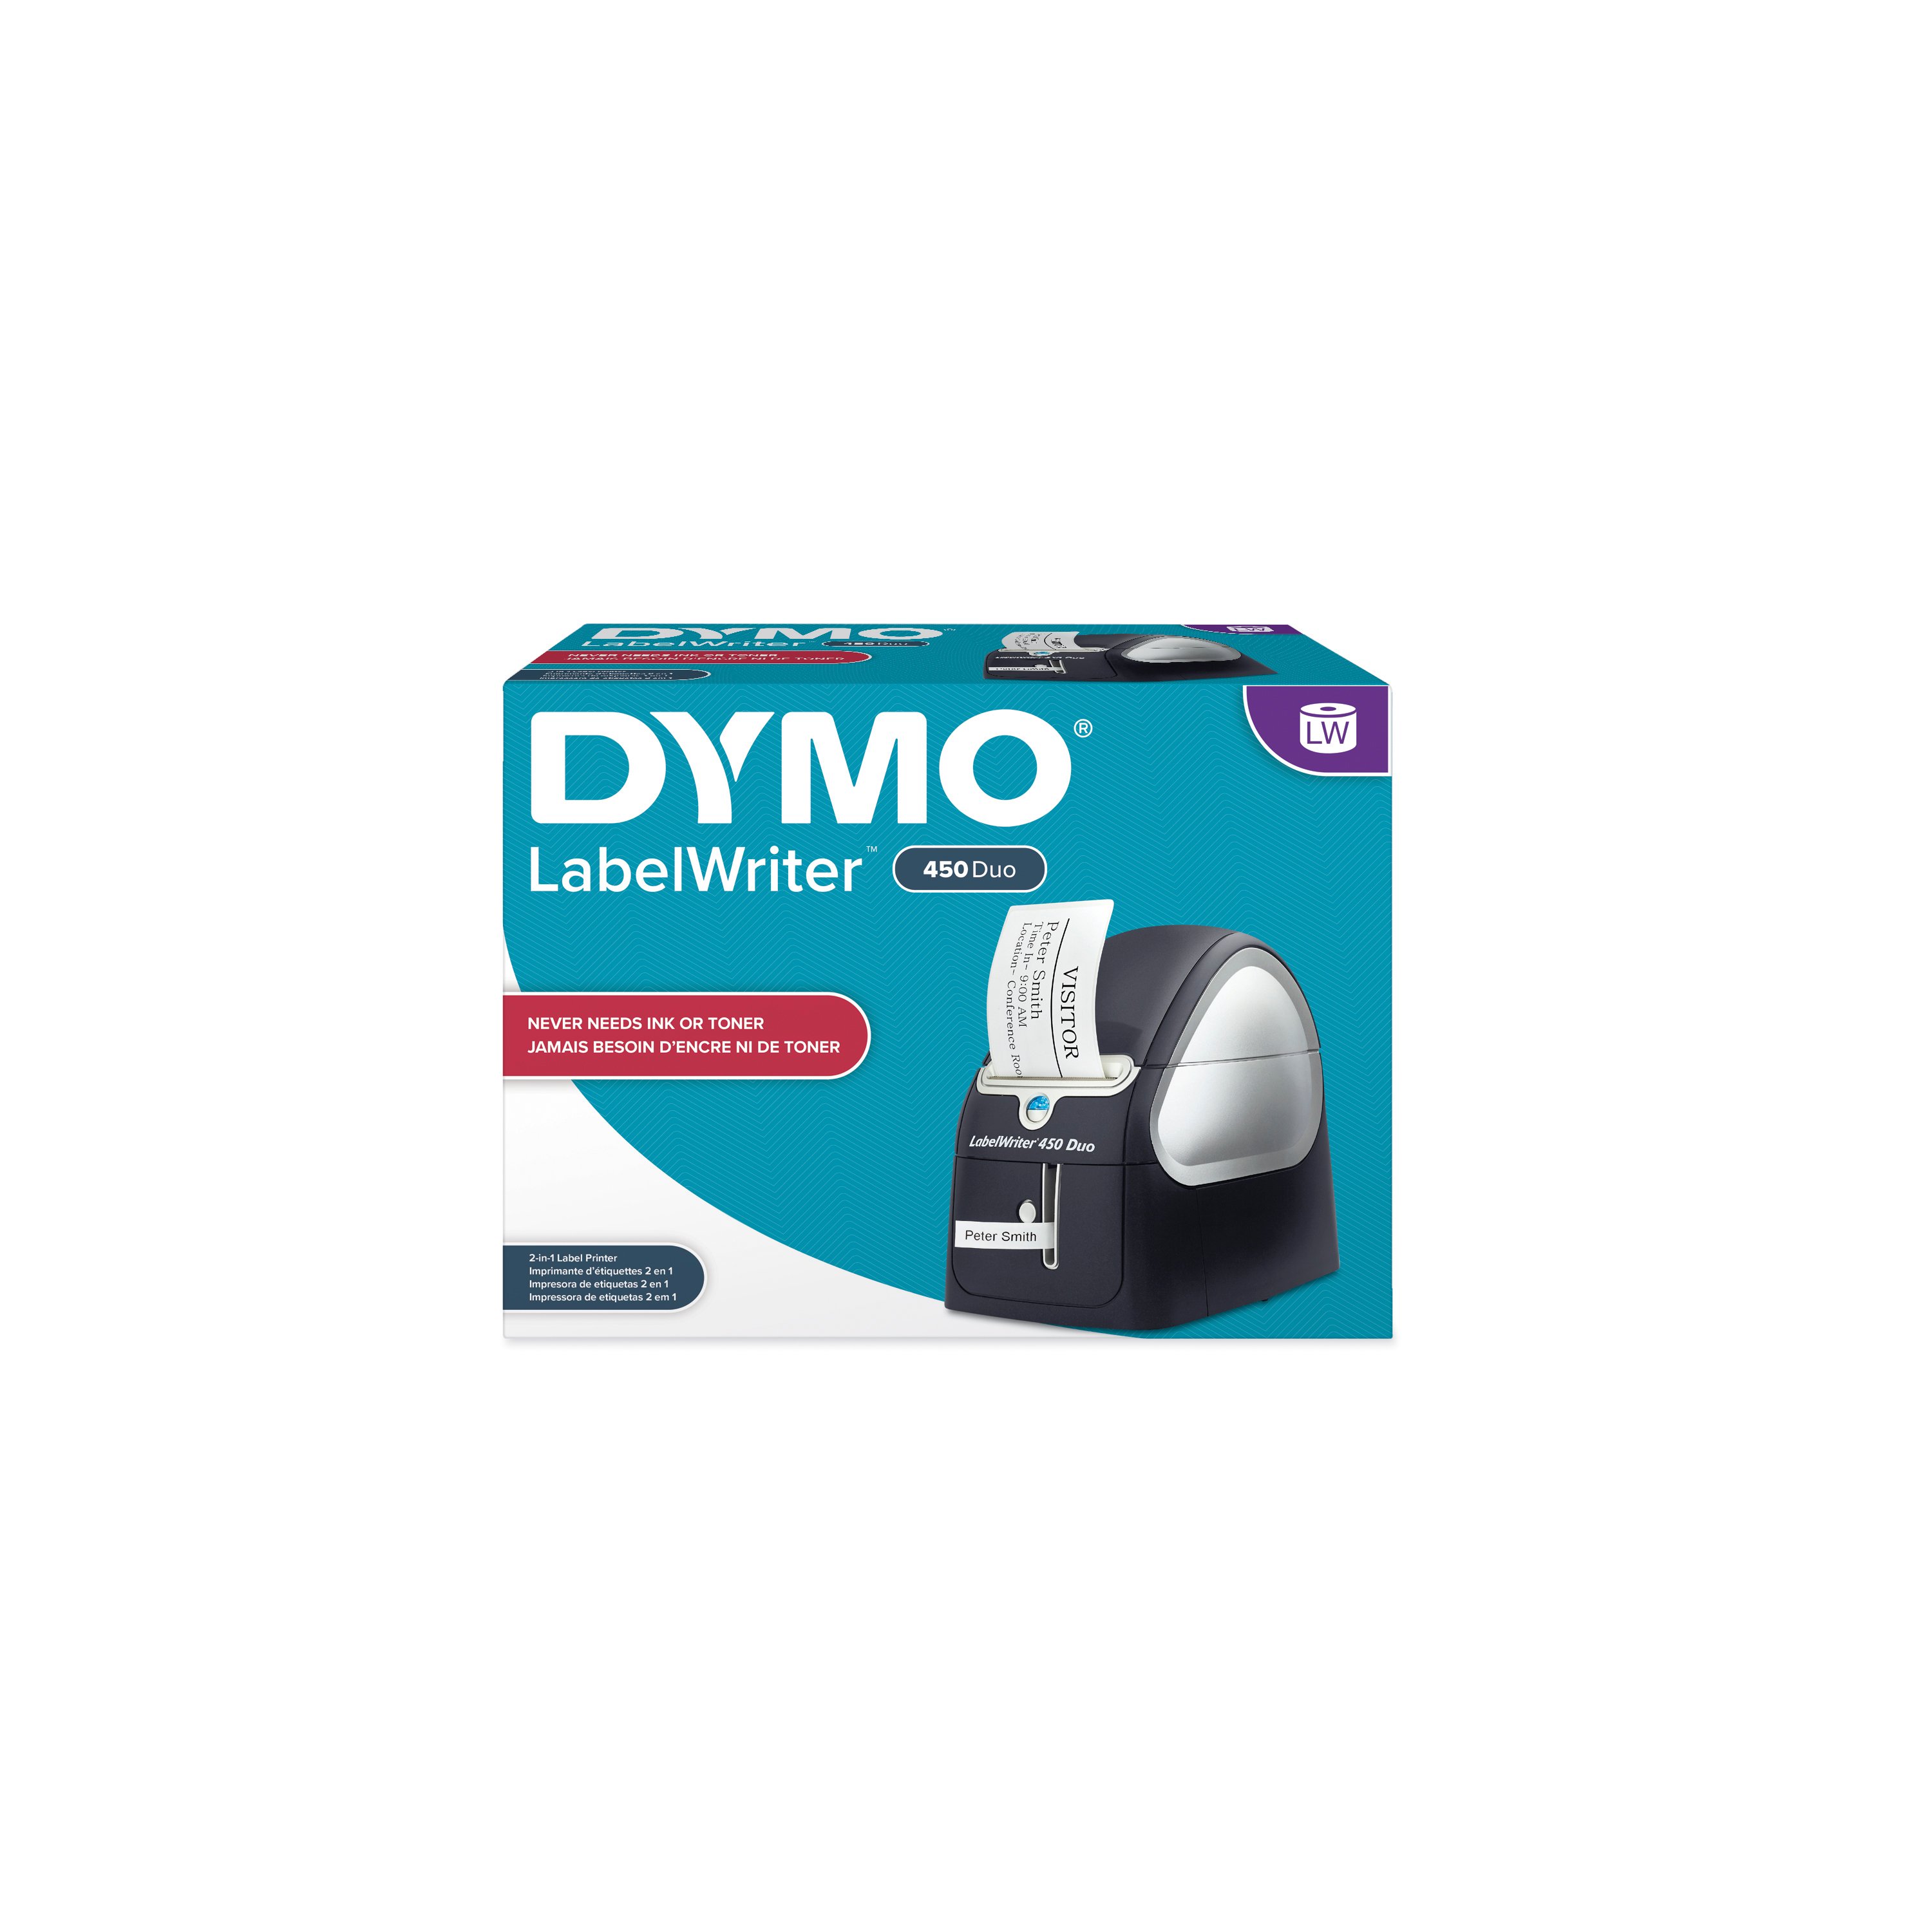 Dymo 1957331 LabelWriter 450 Bundle with 4 LW Rolls 1957331 - Adorama